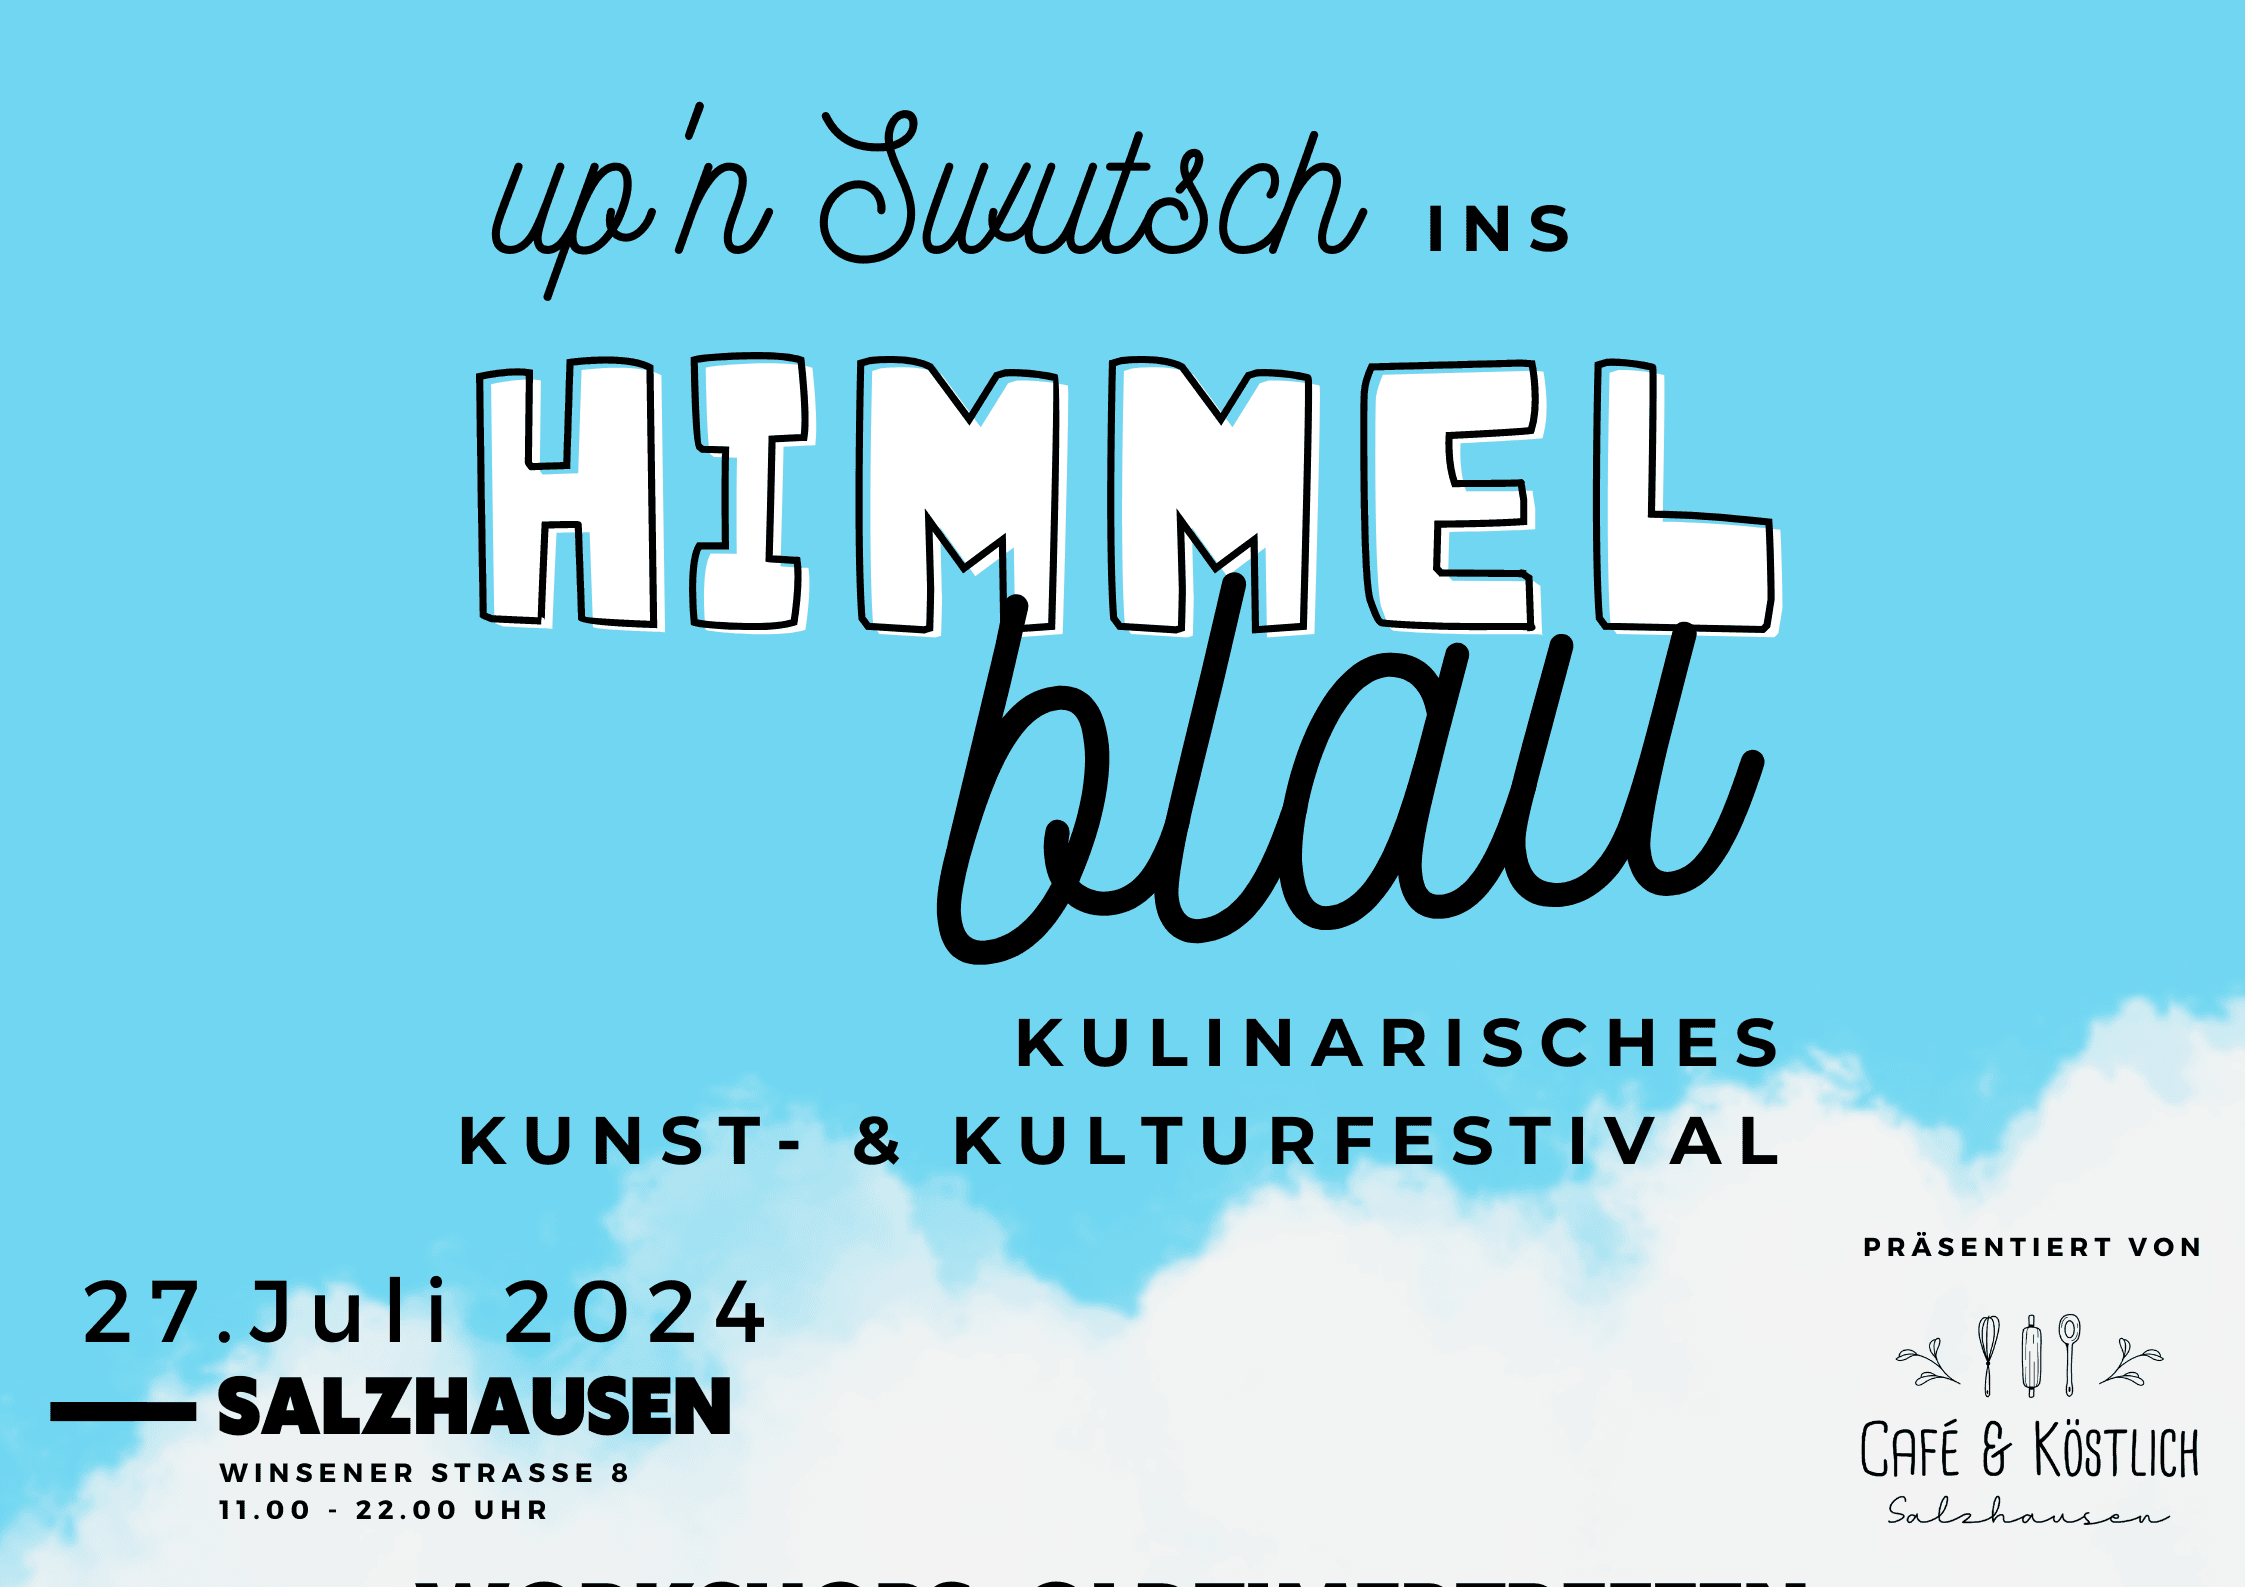 Kulinarisches Kunst- und Kulturfestival: "Upn Swutsch ins Himmelblau"